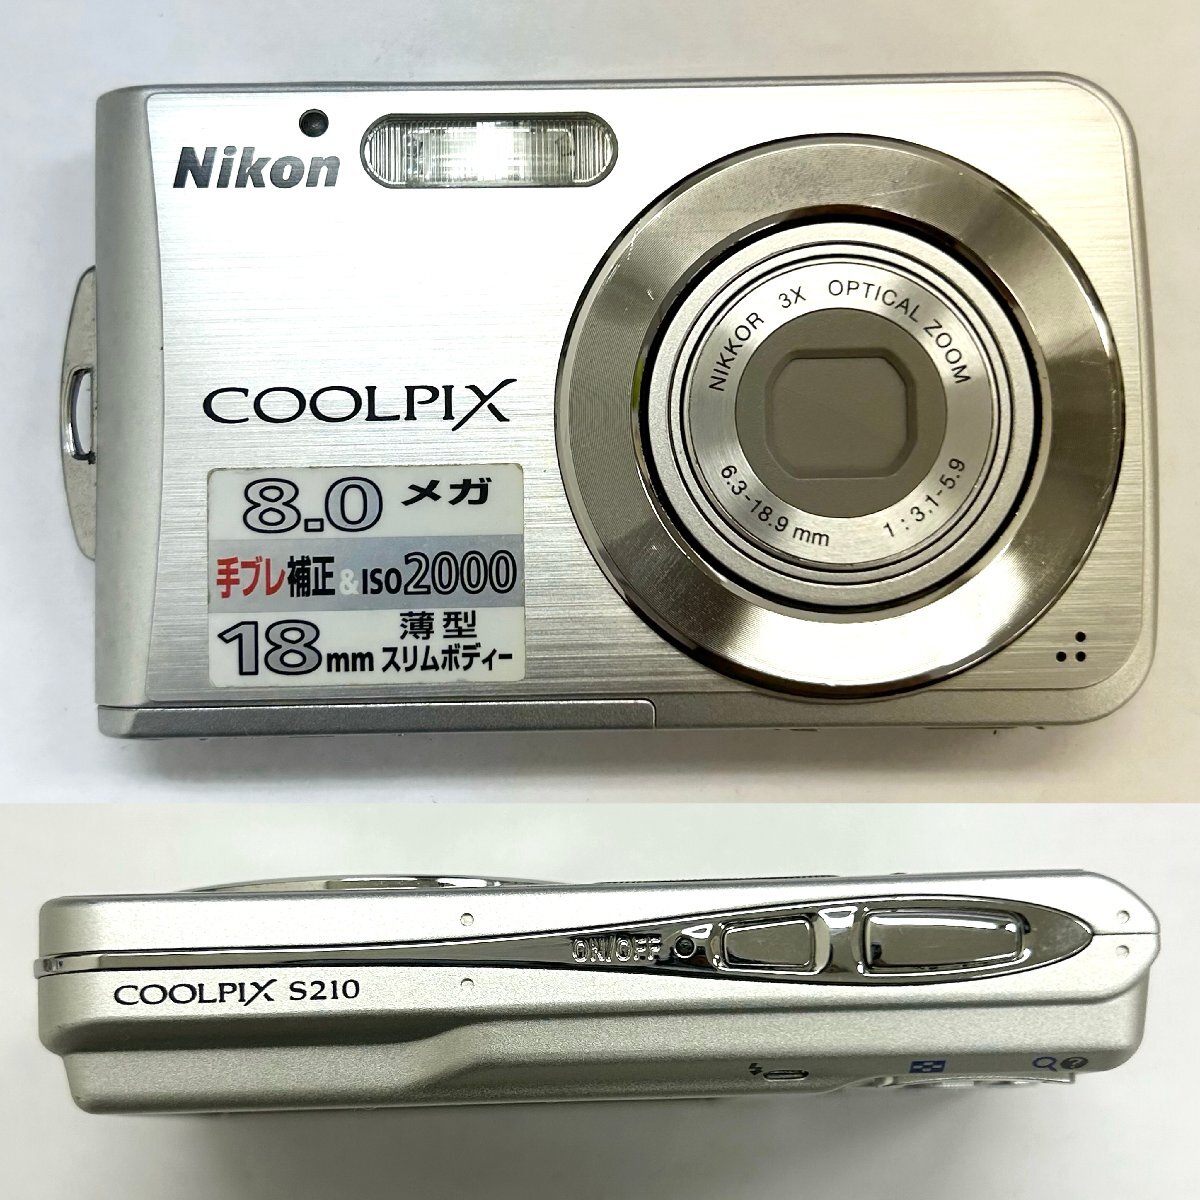 ◆ニコン Nikon◆CoolPix S210 本体 NIKKOR 3X OPTICAL ZOOM 6.3-18.9mm 1:3.1-5.9 デジタル カメラ シルバー ケース付 動作未確認_画像2